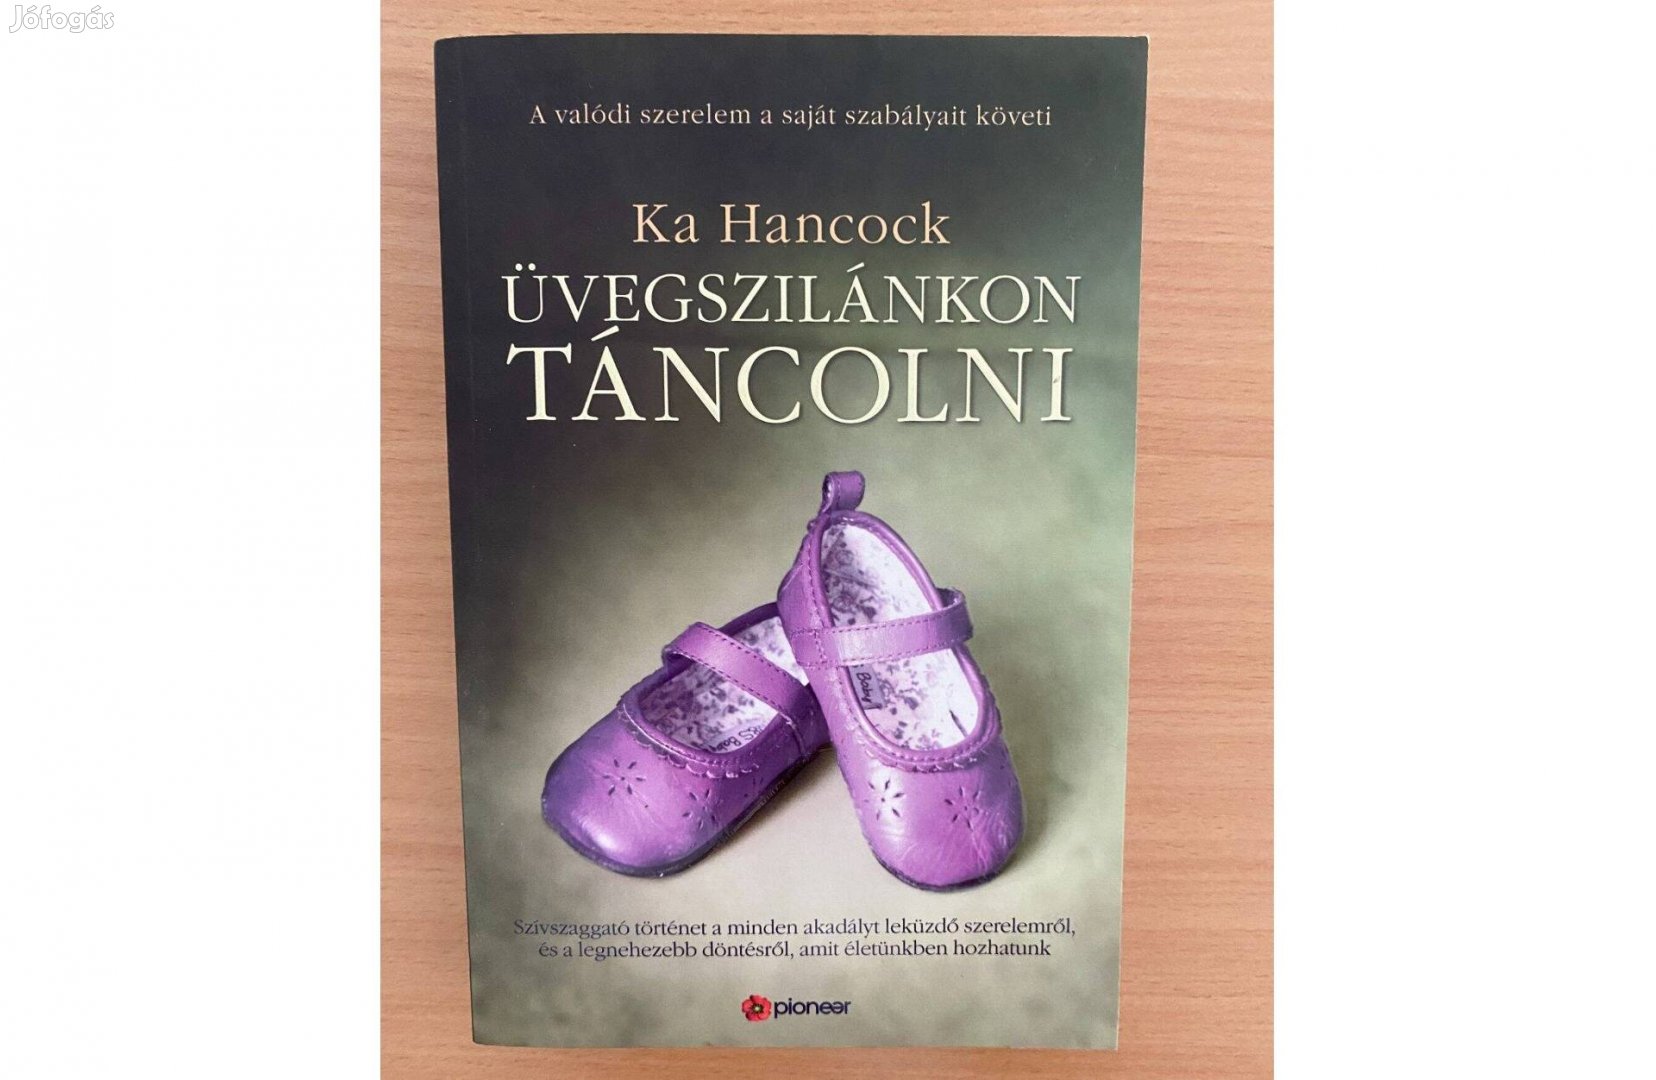 Ka Hancock: Üvegszilánkon táncolni című könyv